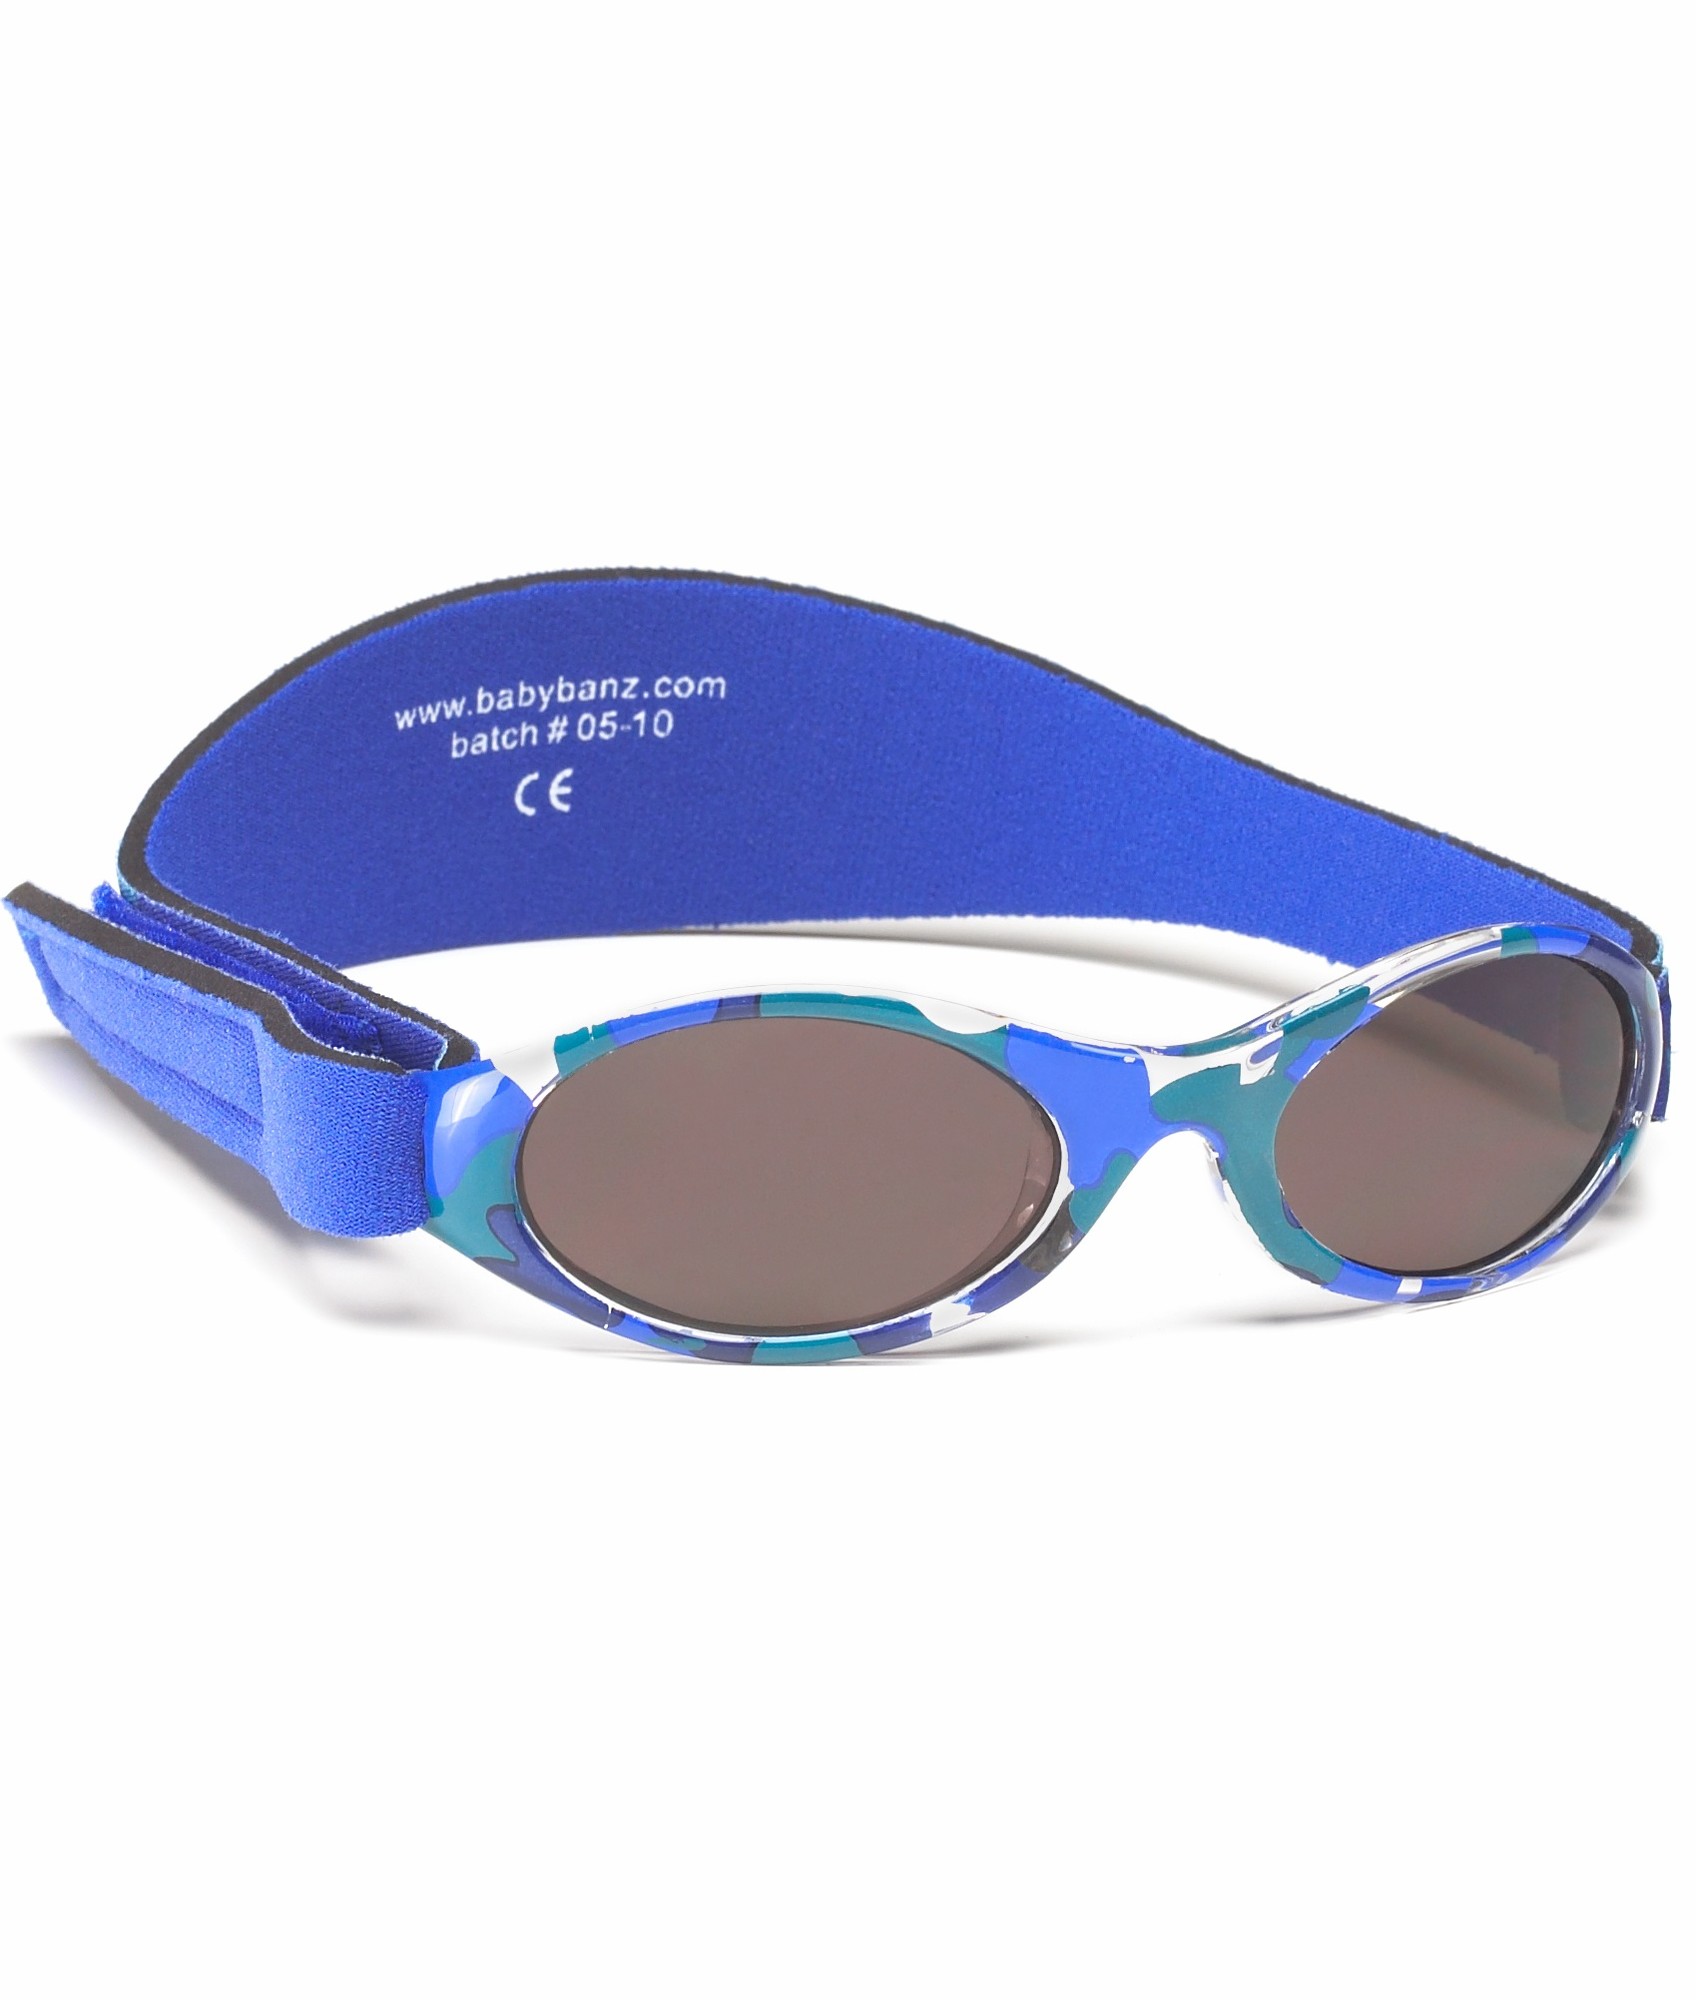 Banz - UV-beschermende zonnebril voor kinderen - Bubzee - Blauw Camo